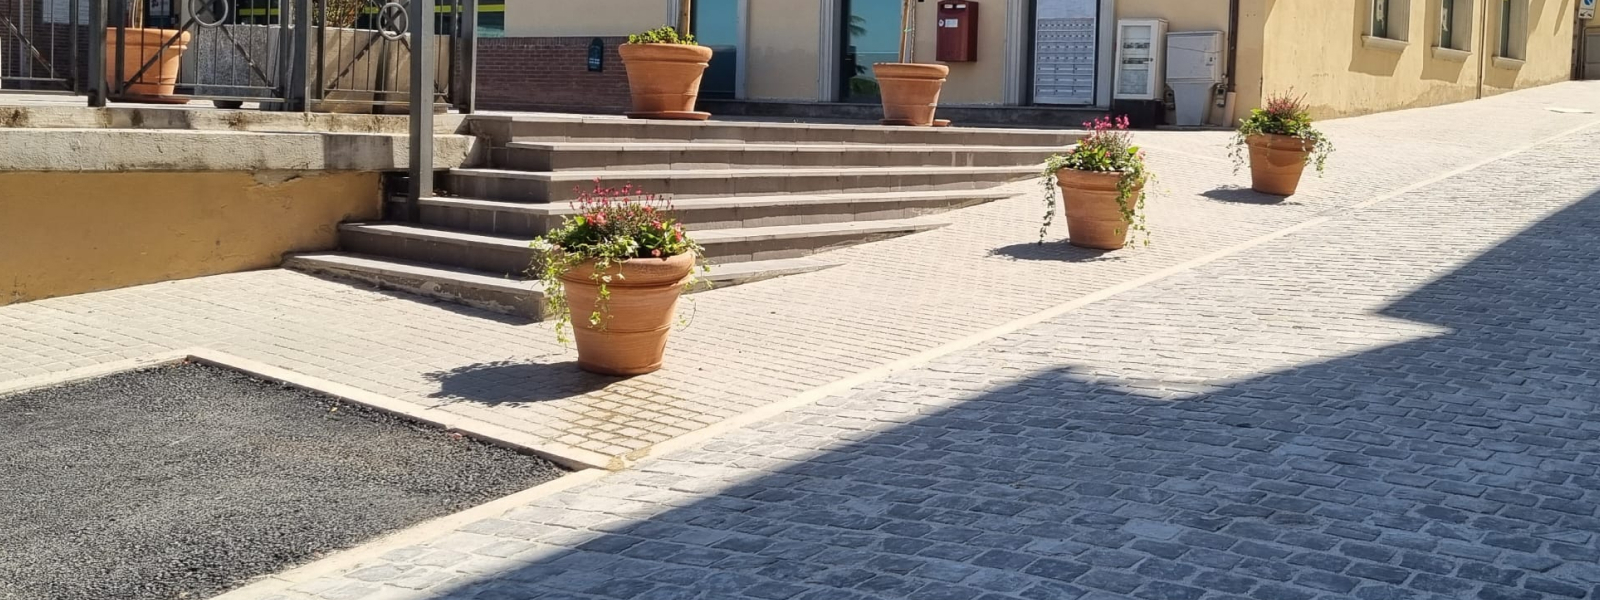 si vede un marciapiede con una scalinata e dei vasi di fiori